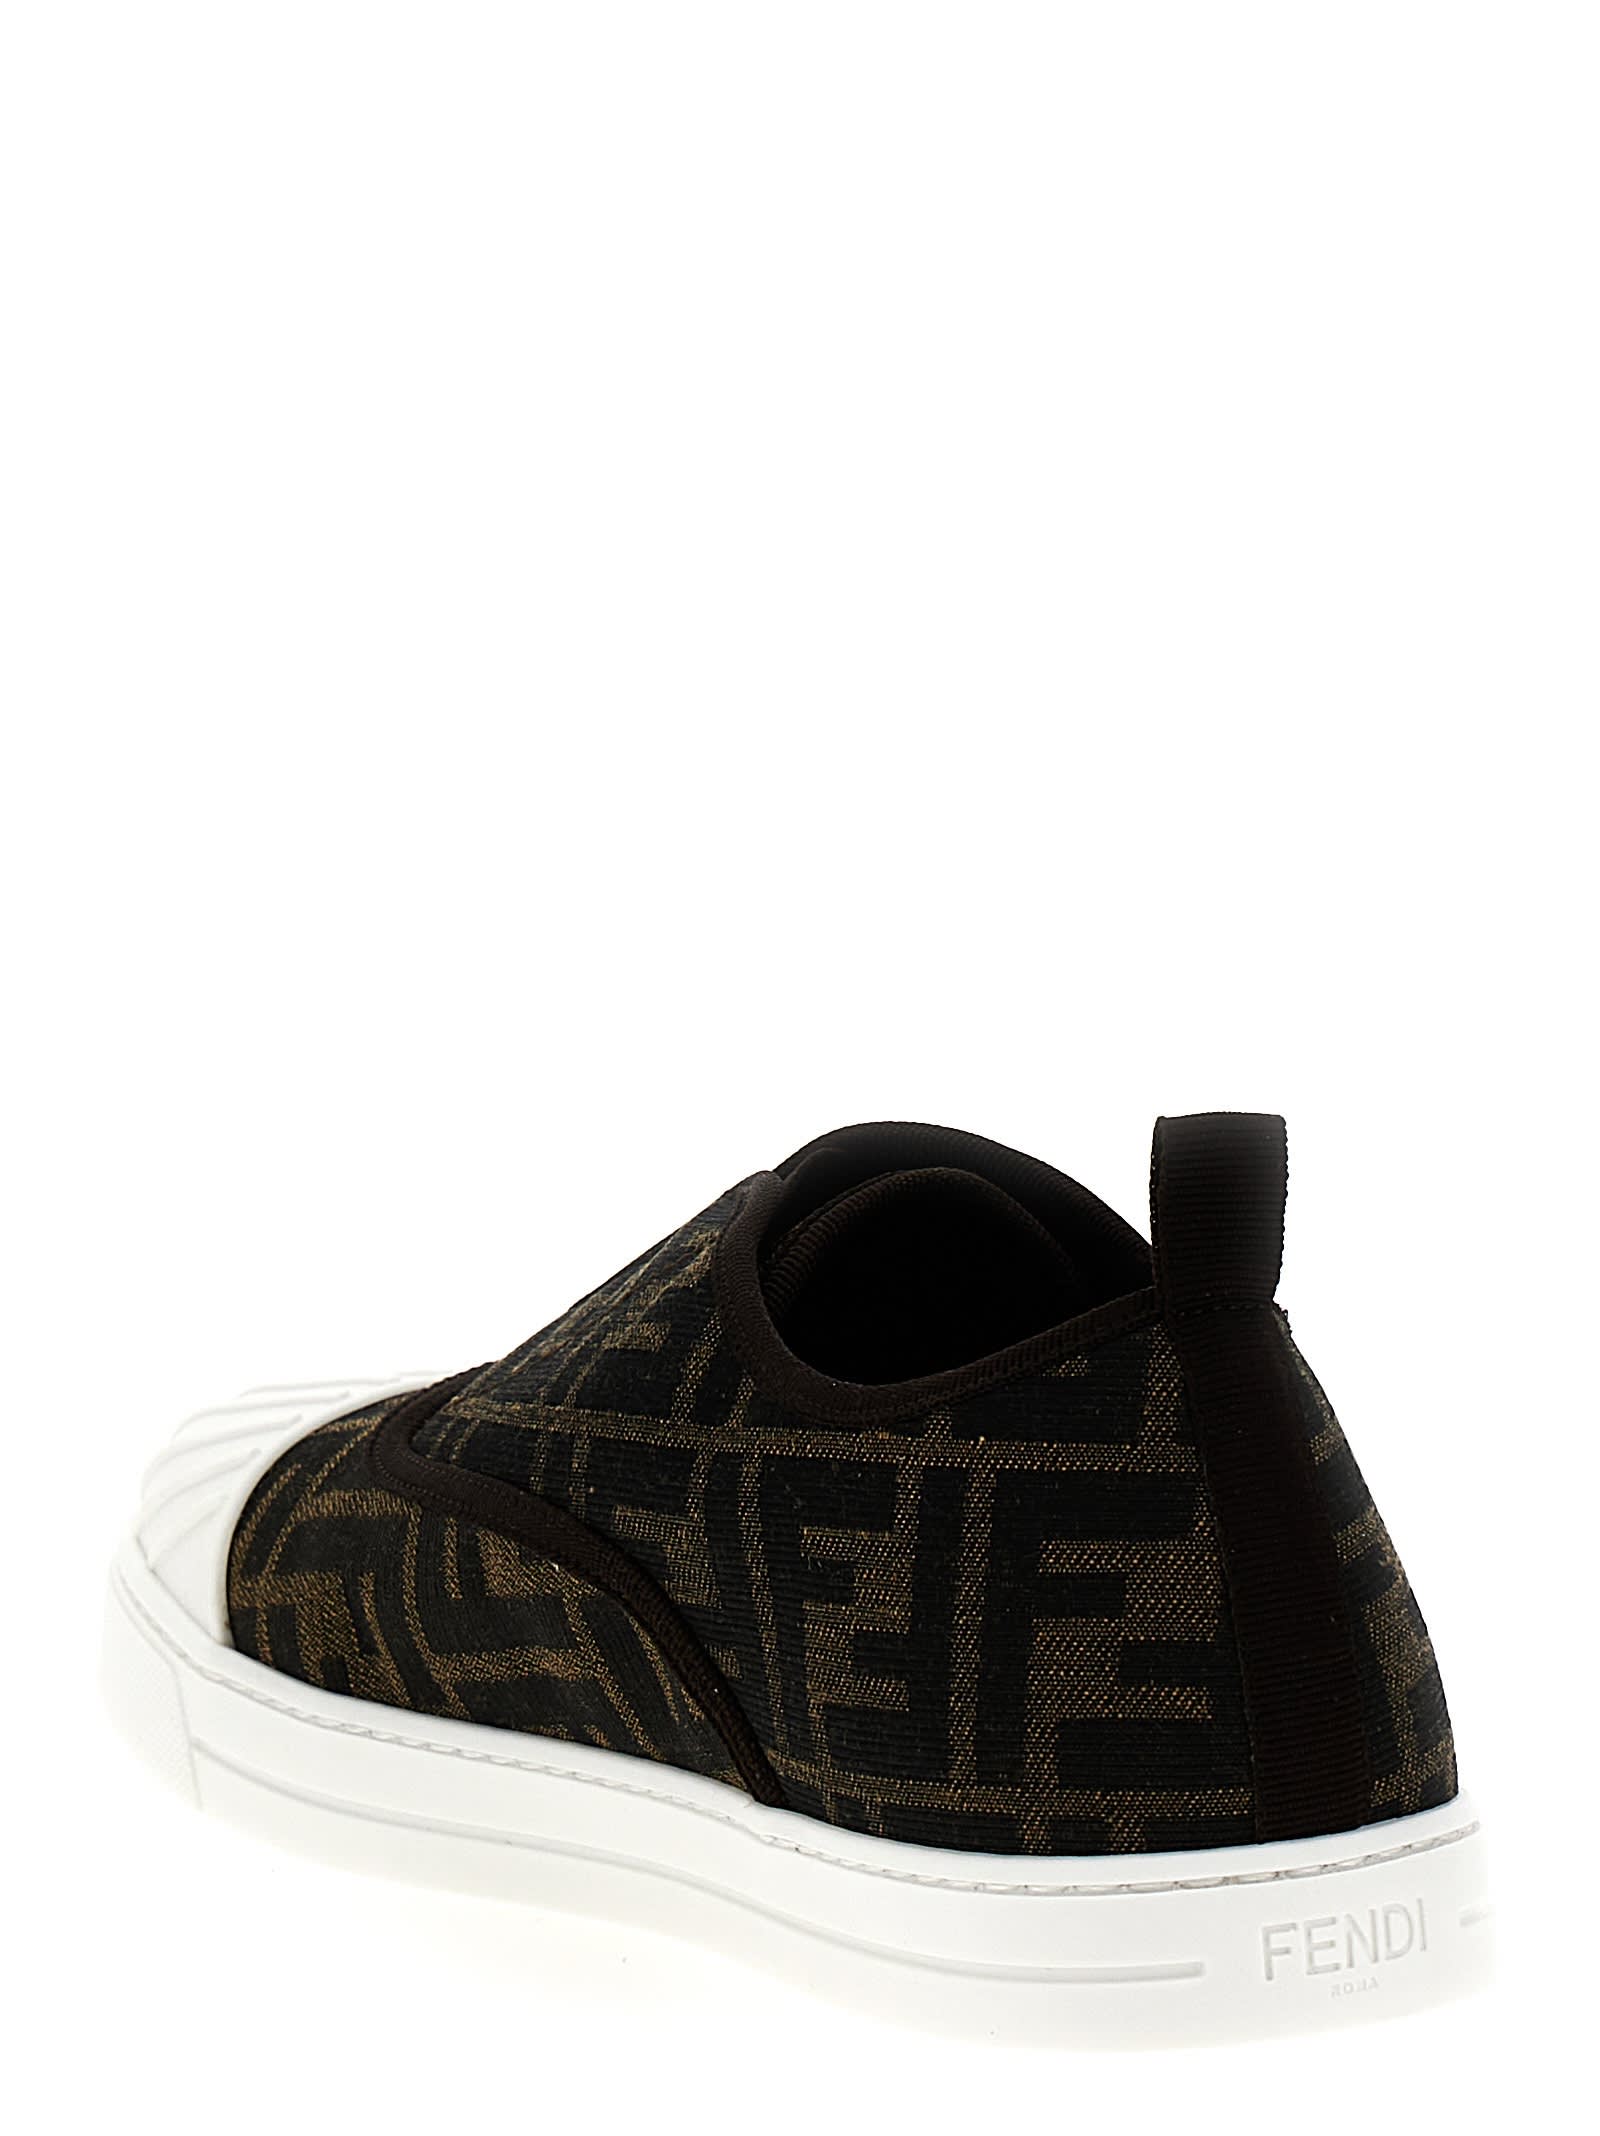 Shop Fendi Junior Sneakers